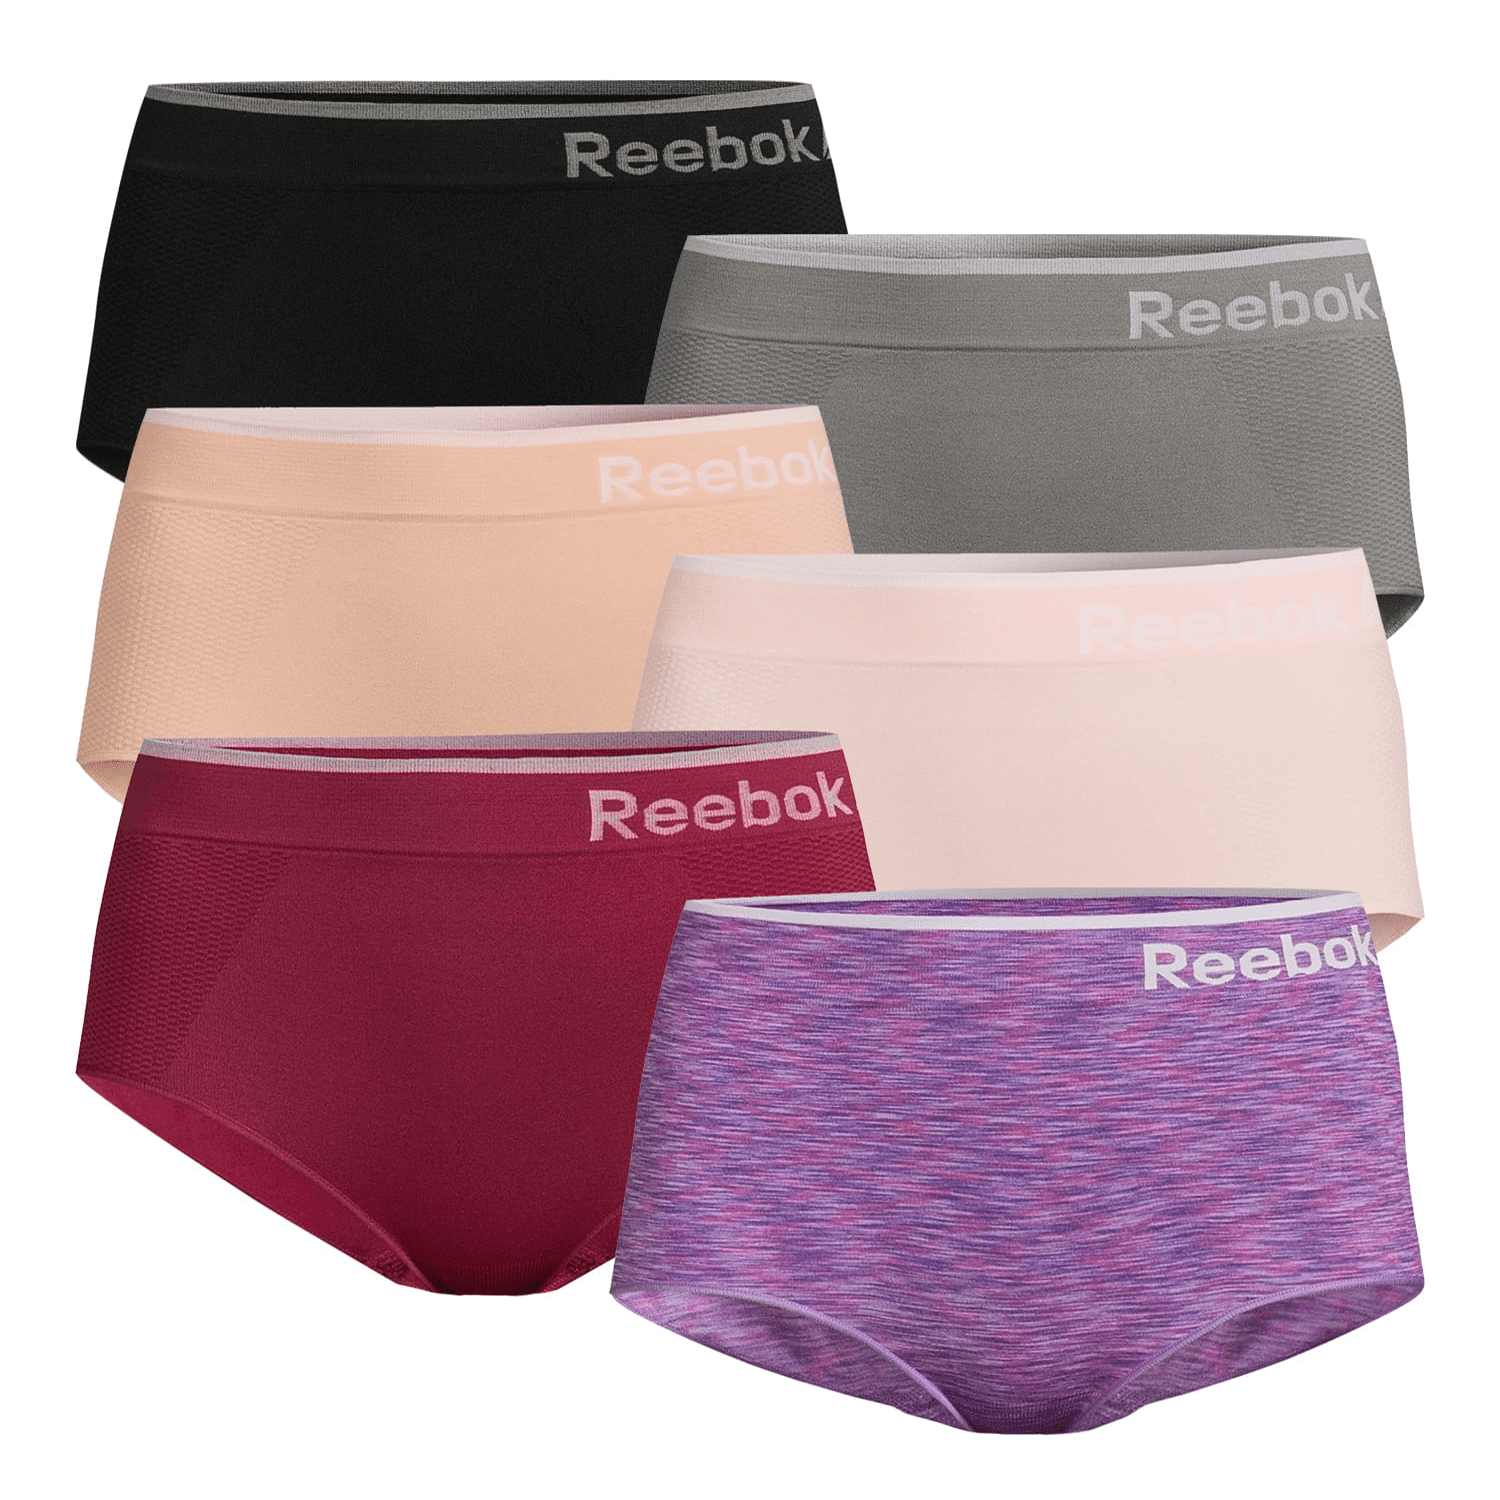 Reebok Women's Seamless Briefs, 6-Pack 